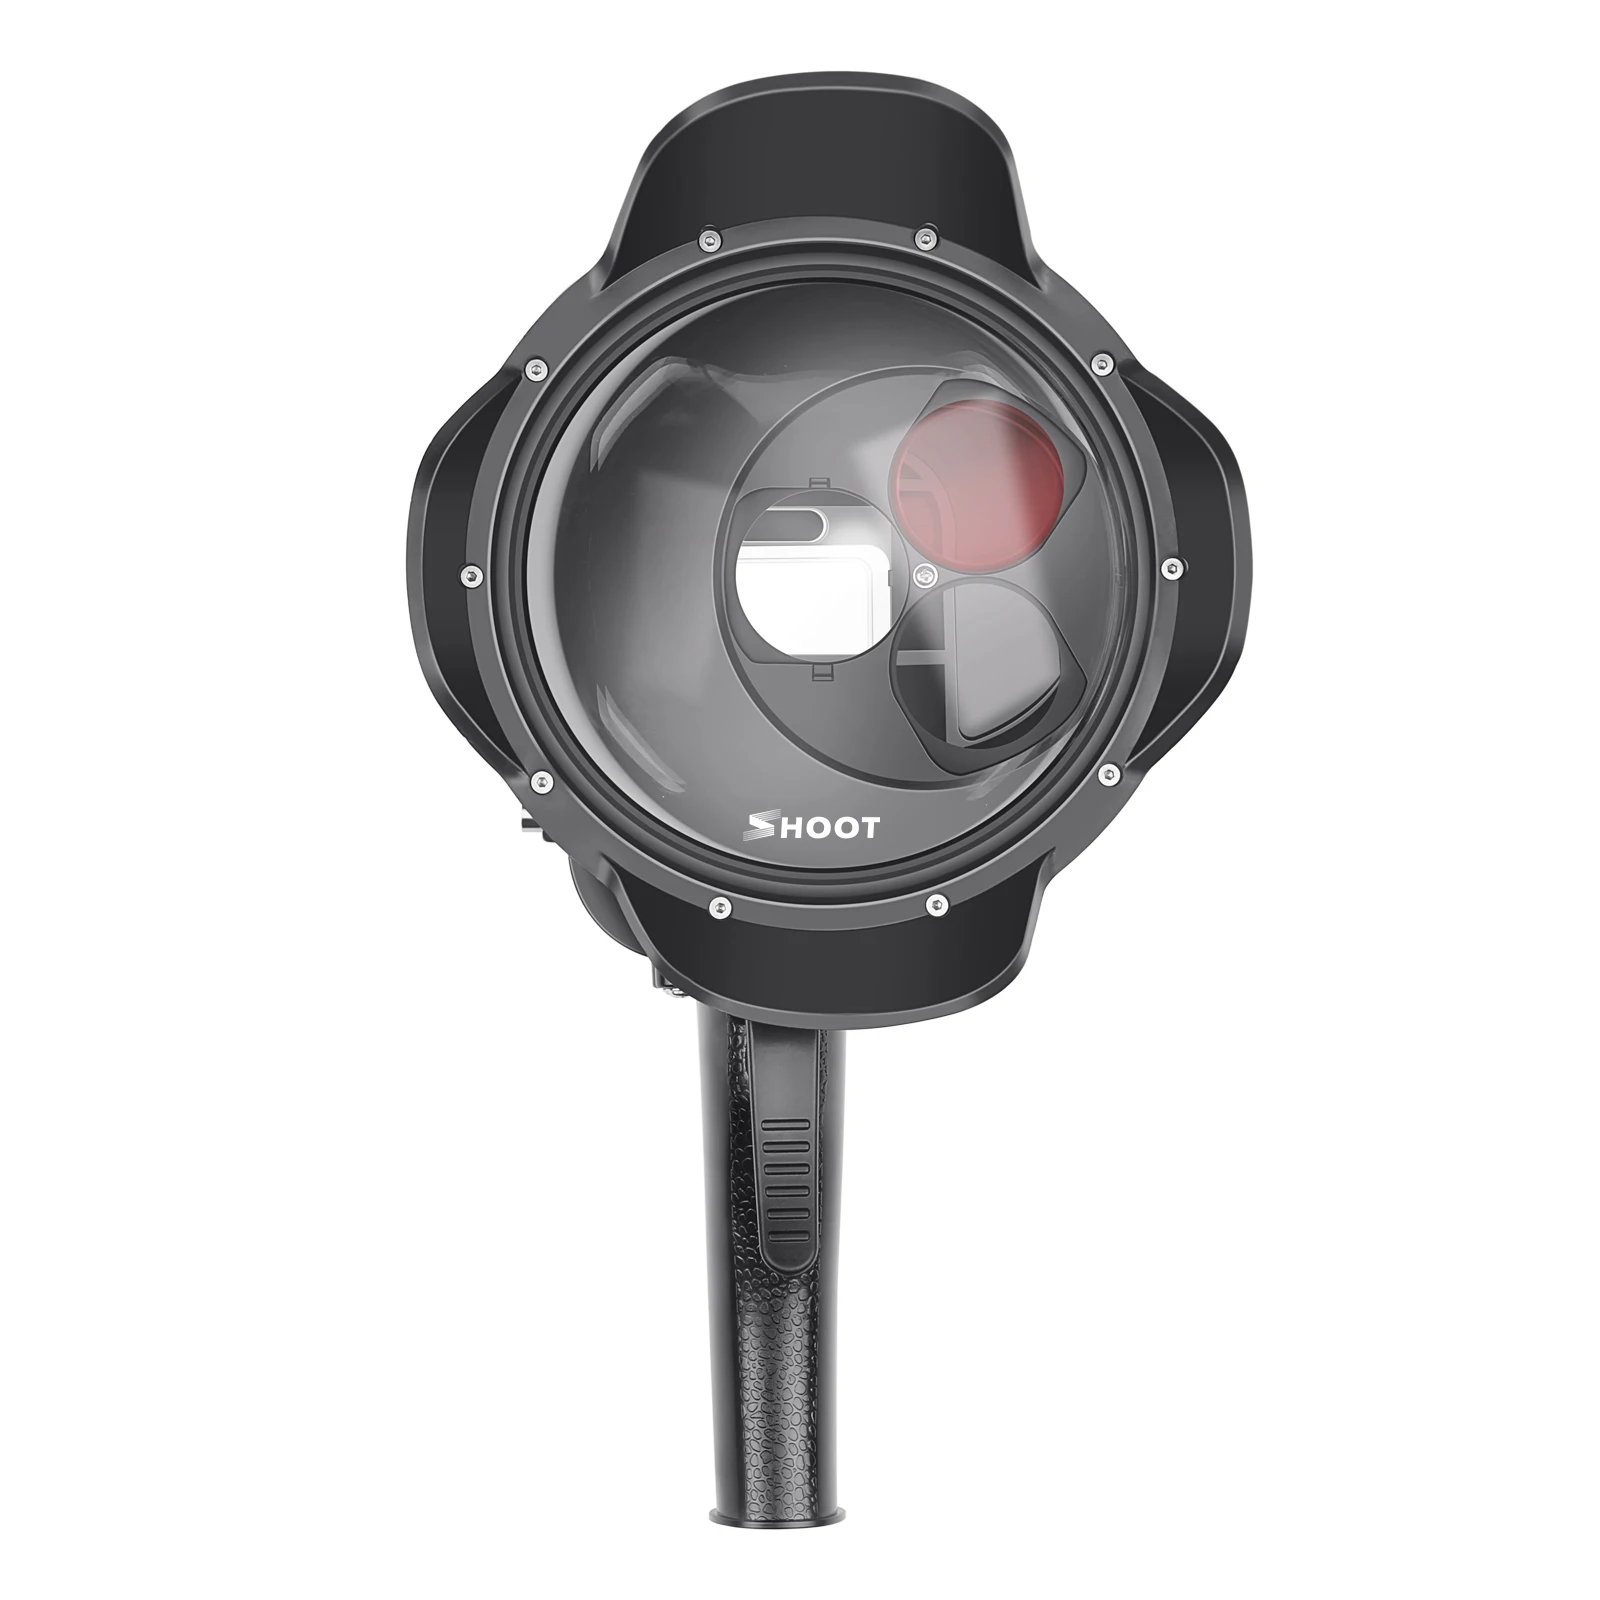 Съёмка подводный купол для GoPro HERO7 6 5 черный с триггерным красным фильтром и 10 макро-фильтр крупным планом для GoPro Hero 8 7